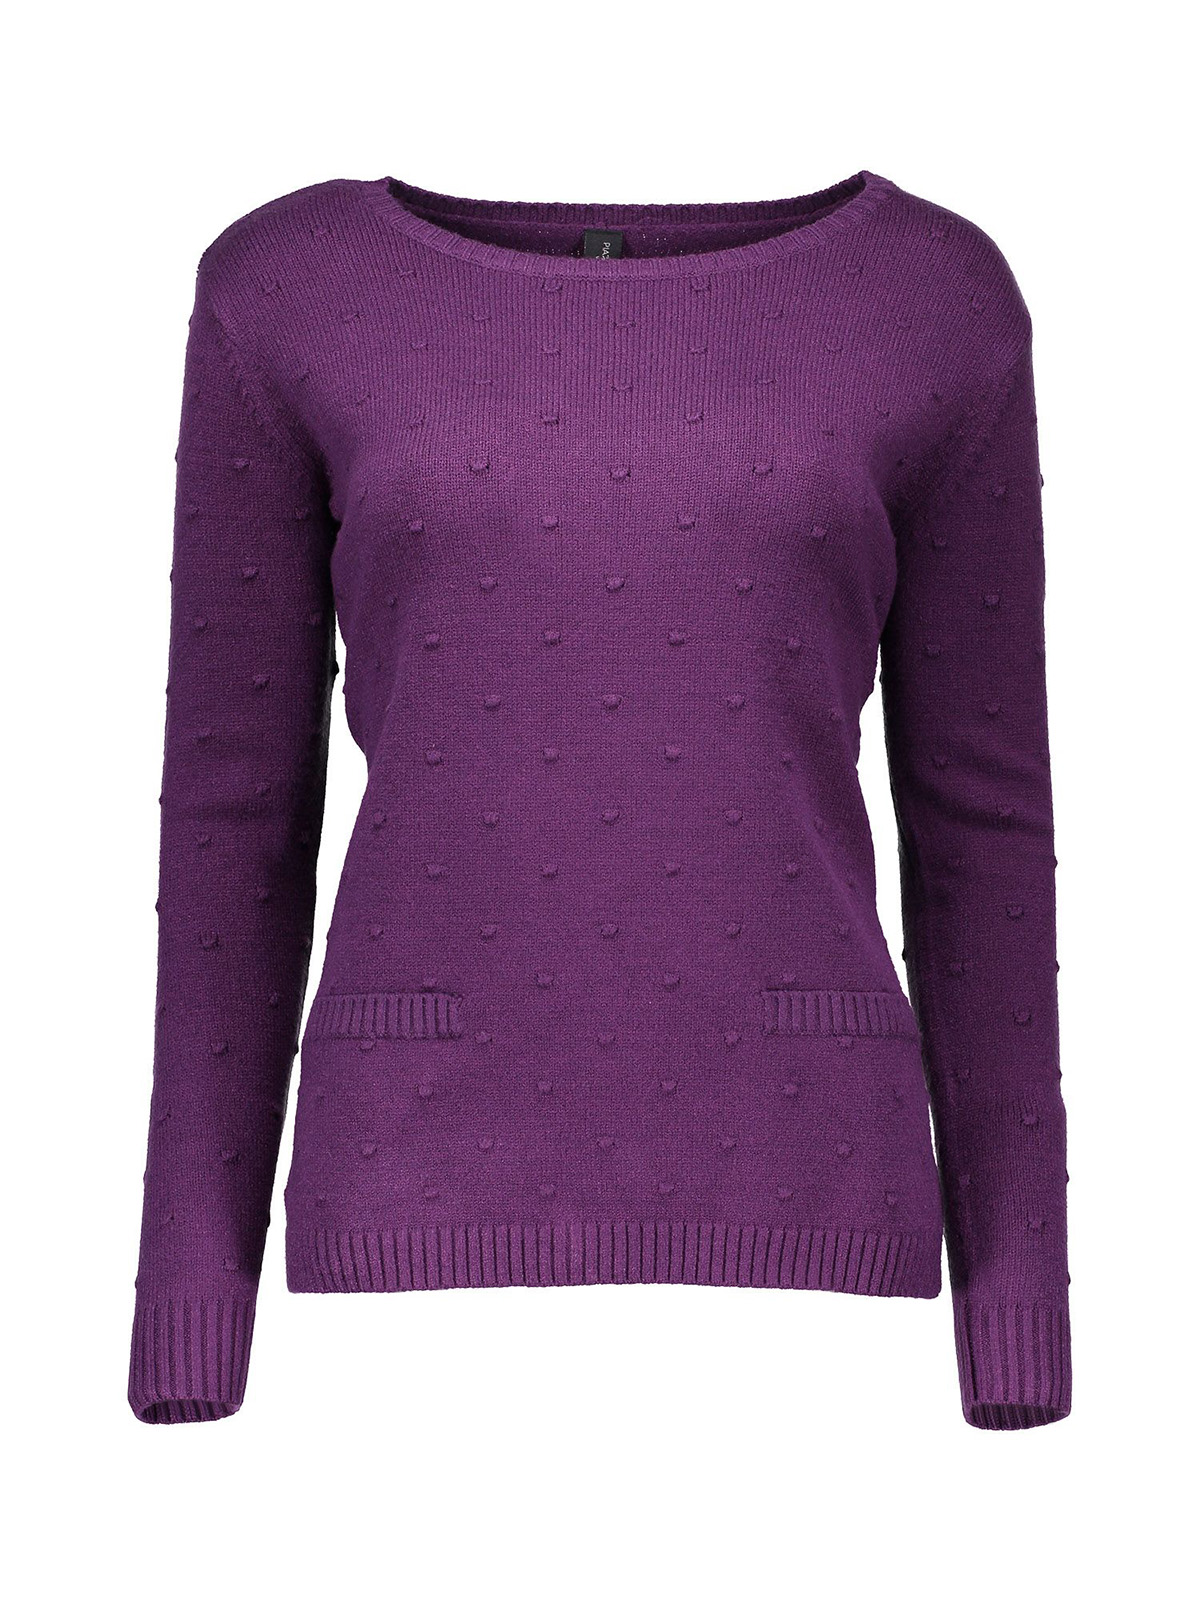 Фиолетовый свитер женский